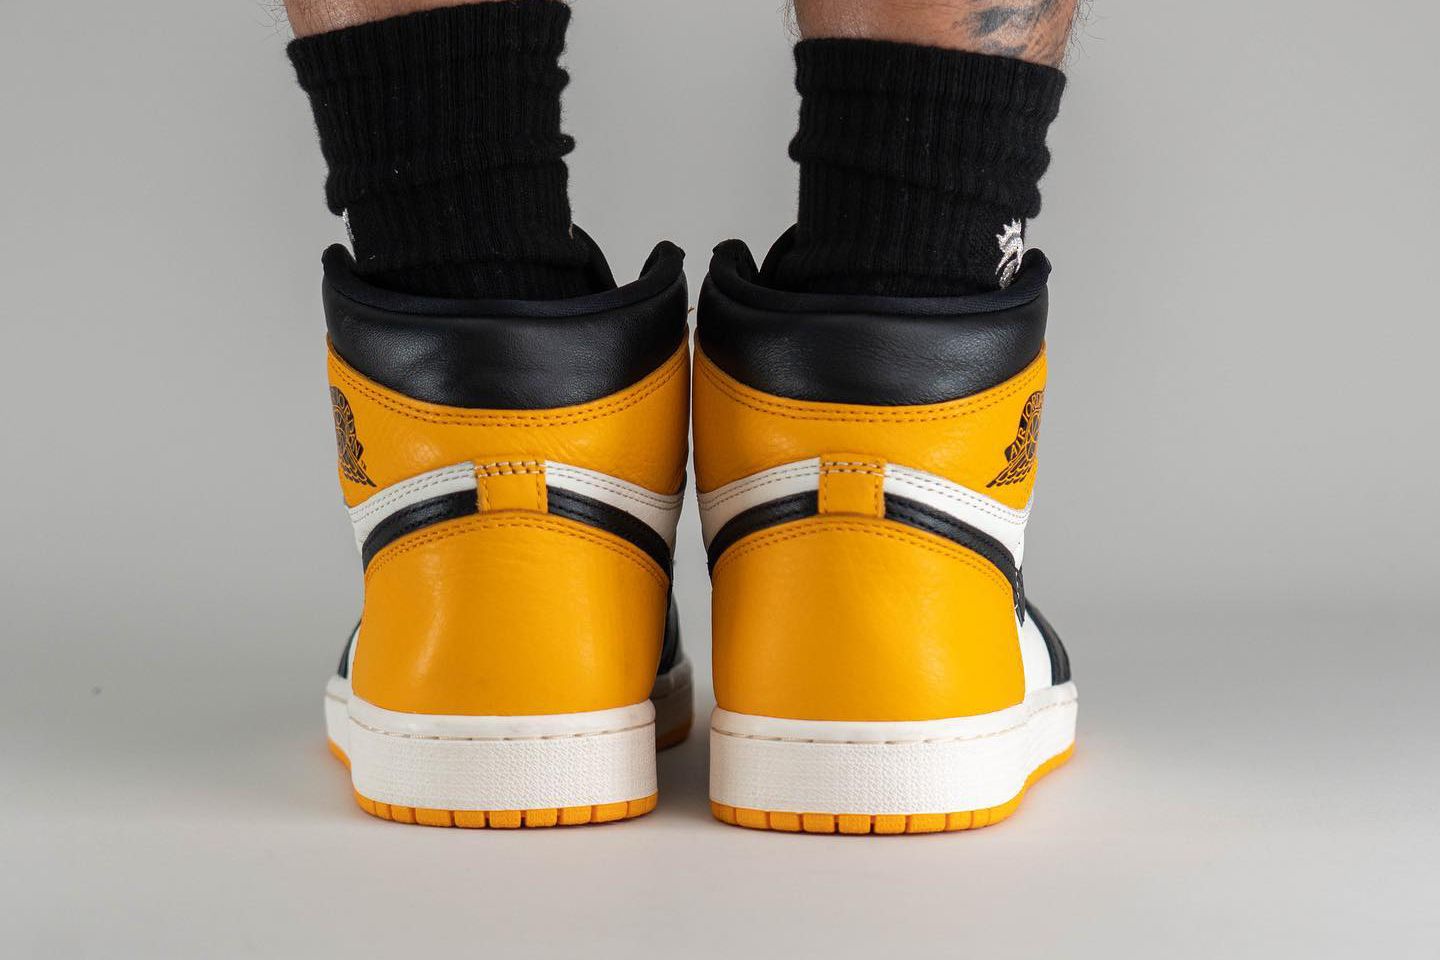 On-Foot Look at the Air Jordan 1 'Yellow Toe' Freaker